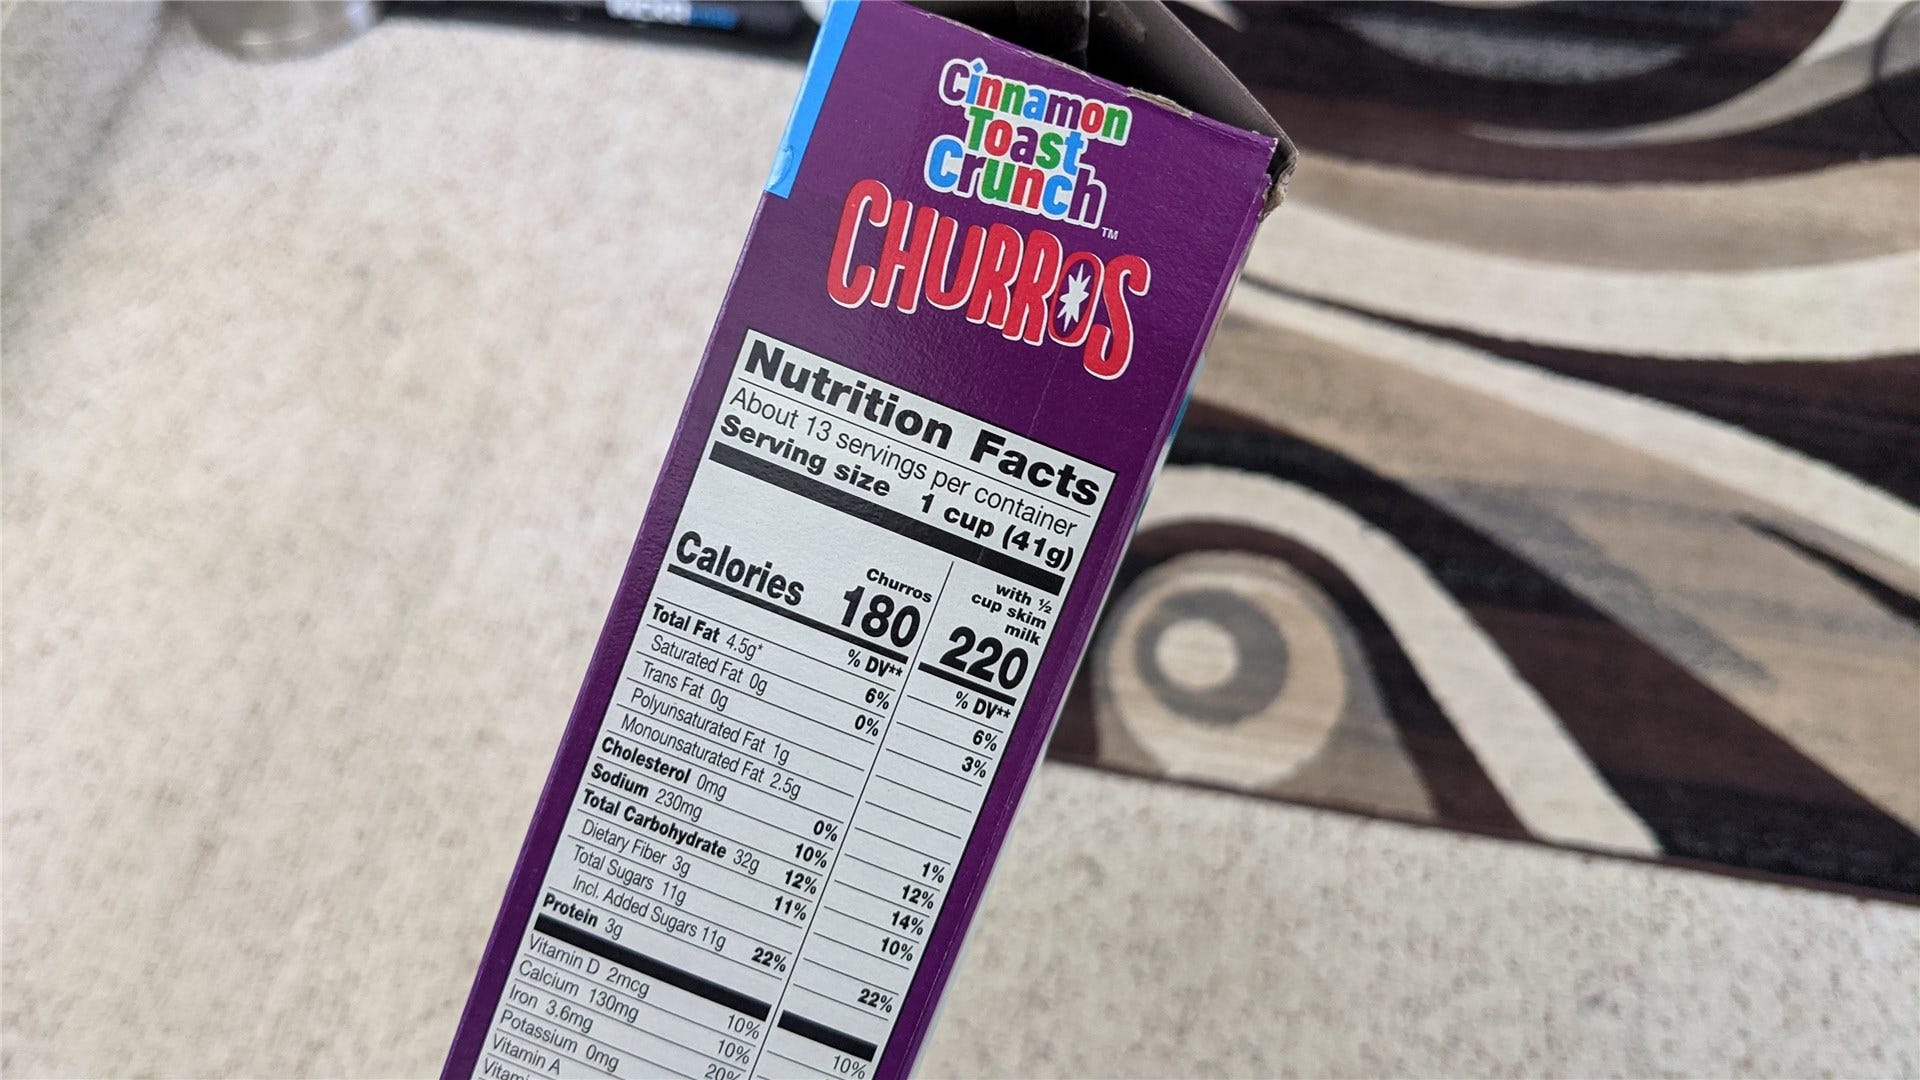 Hình ảnh về thông tin dinh dưỡng trên hộp Churros